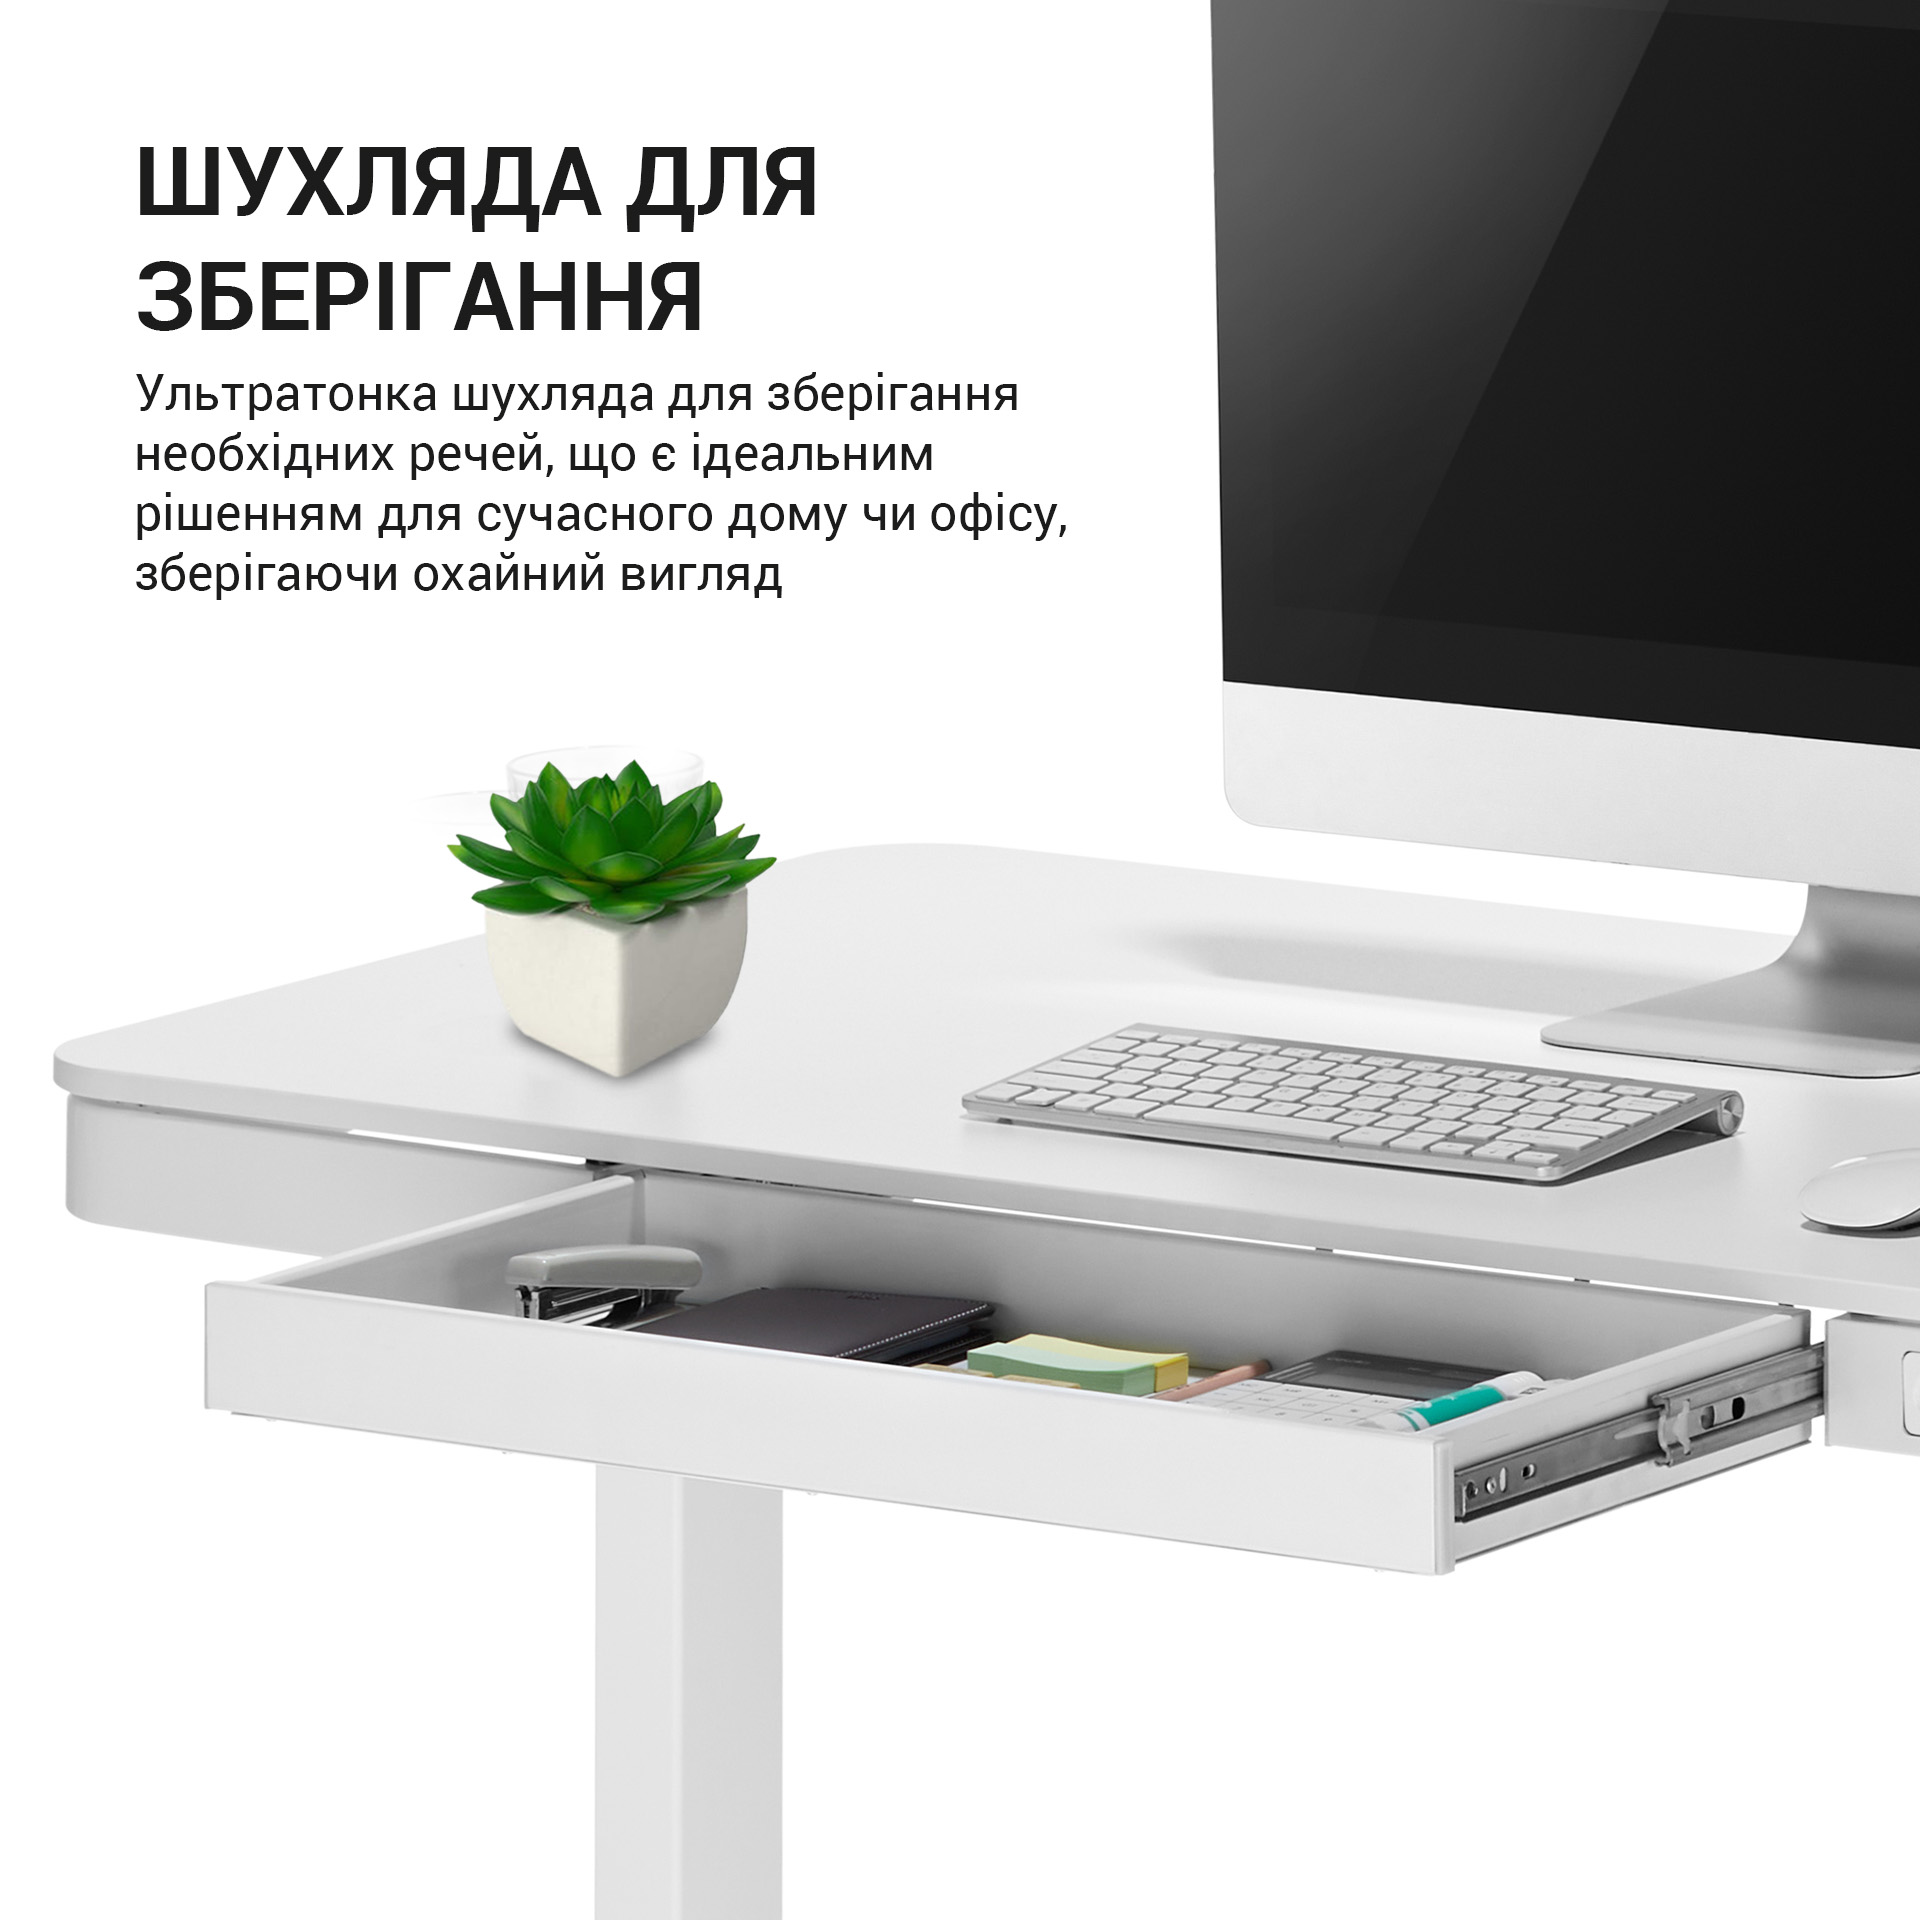 Комп'ютерний стіл OfficePro з електрорегулюванням висоти білий (ODE111WW) - фото 5